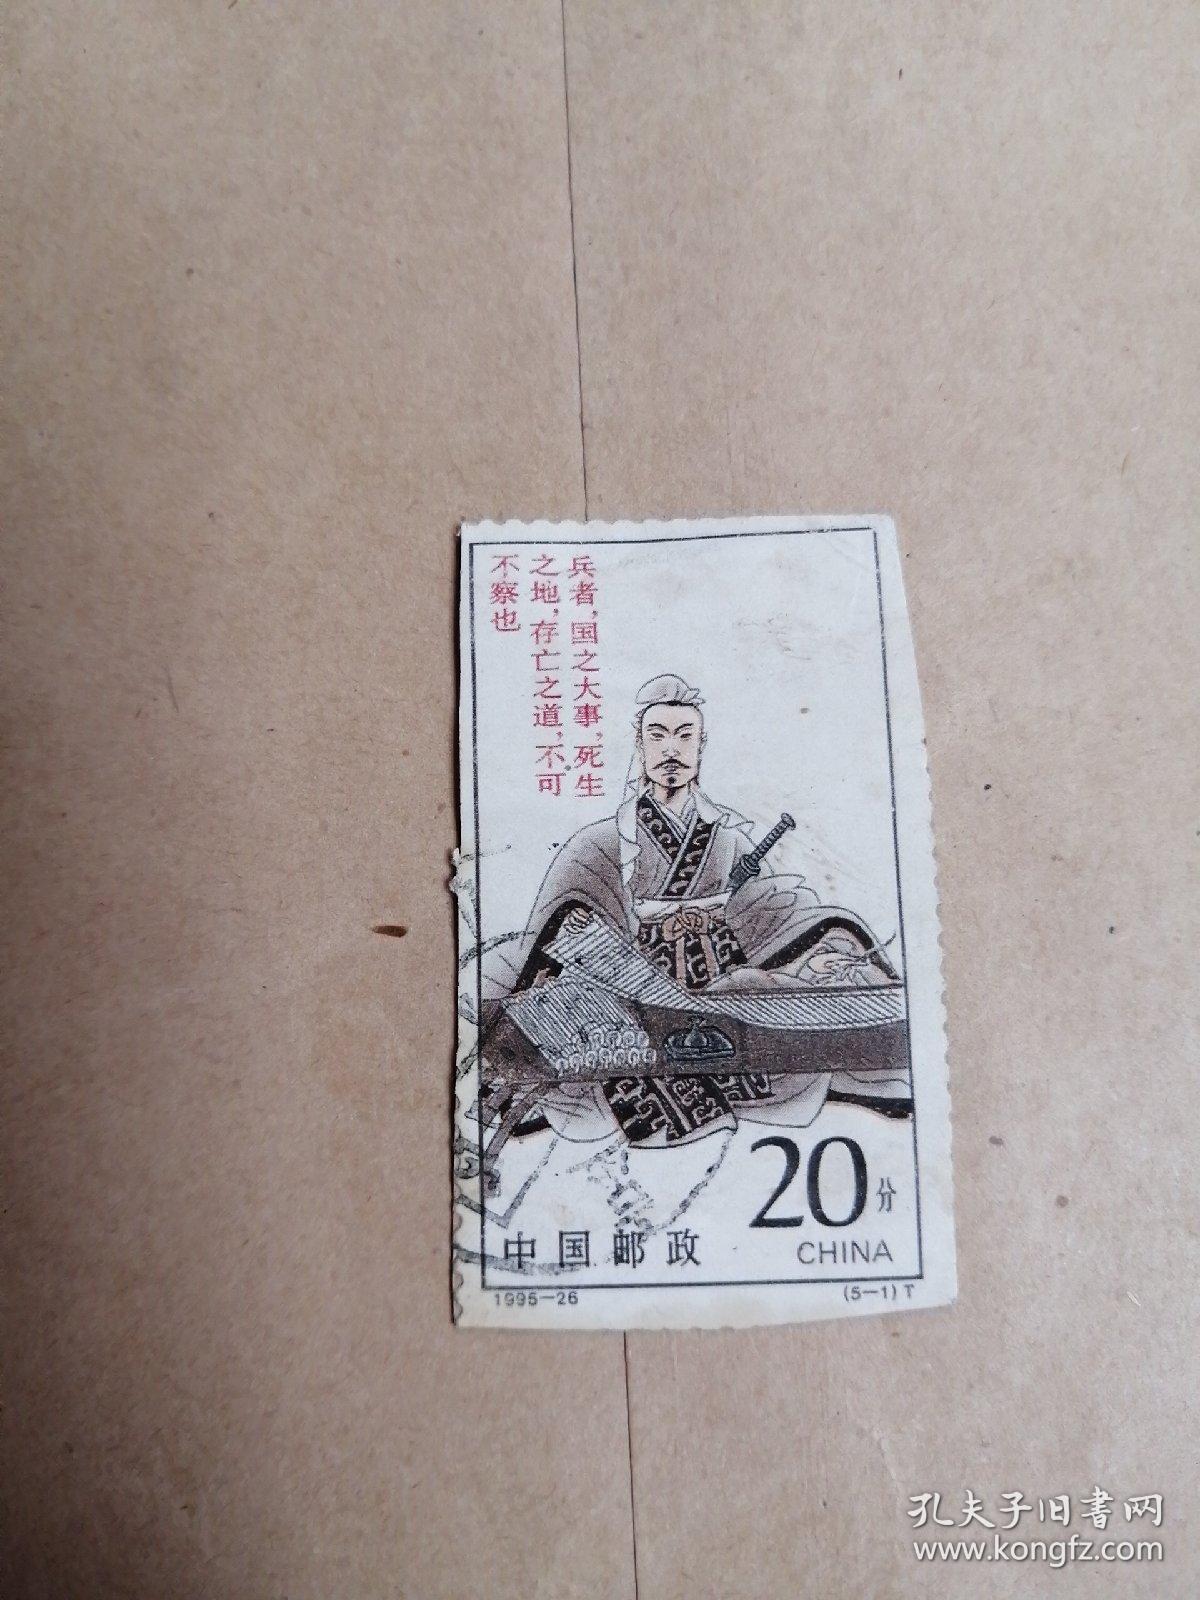 军事家孙膑邮票  1995-26 （5-1）T  
品相如图所示。